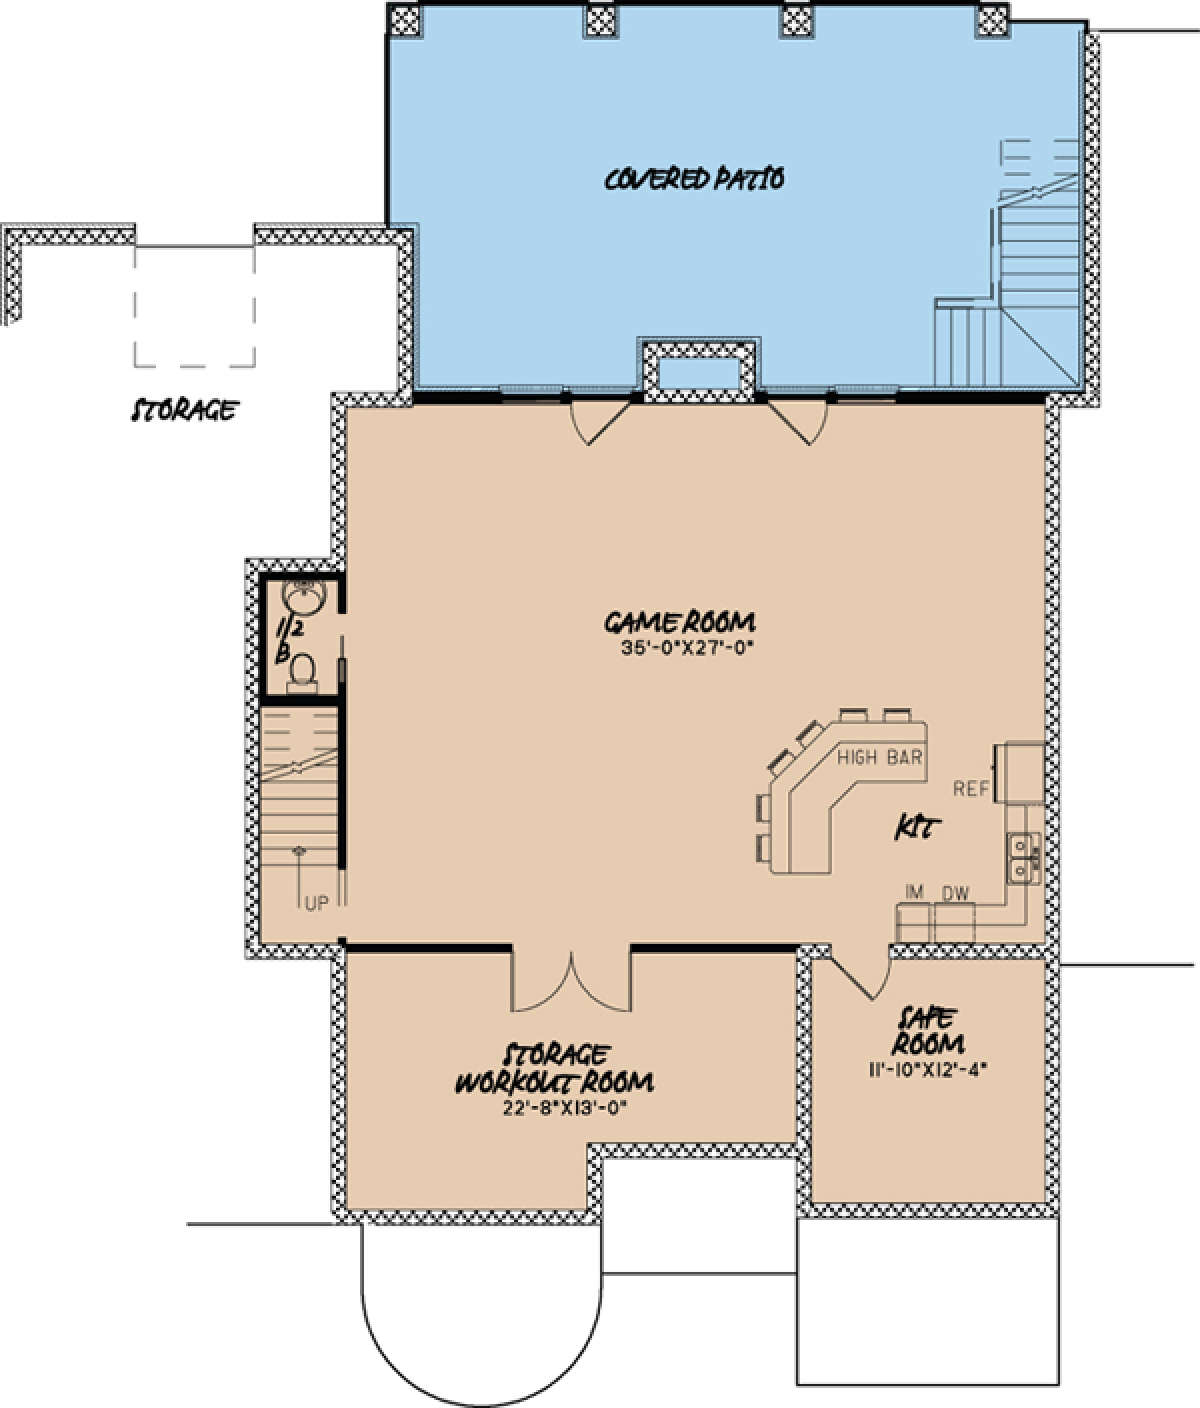 Basement Floor Plan for House Plan #8318-00002